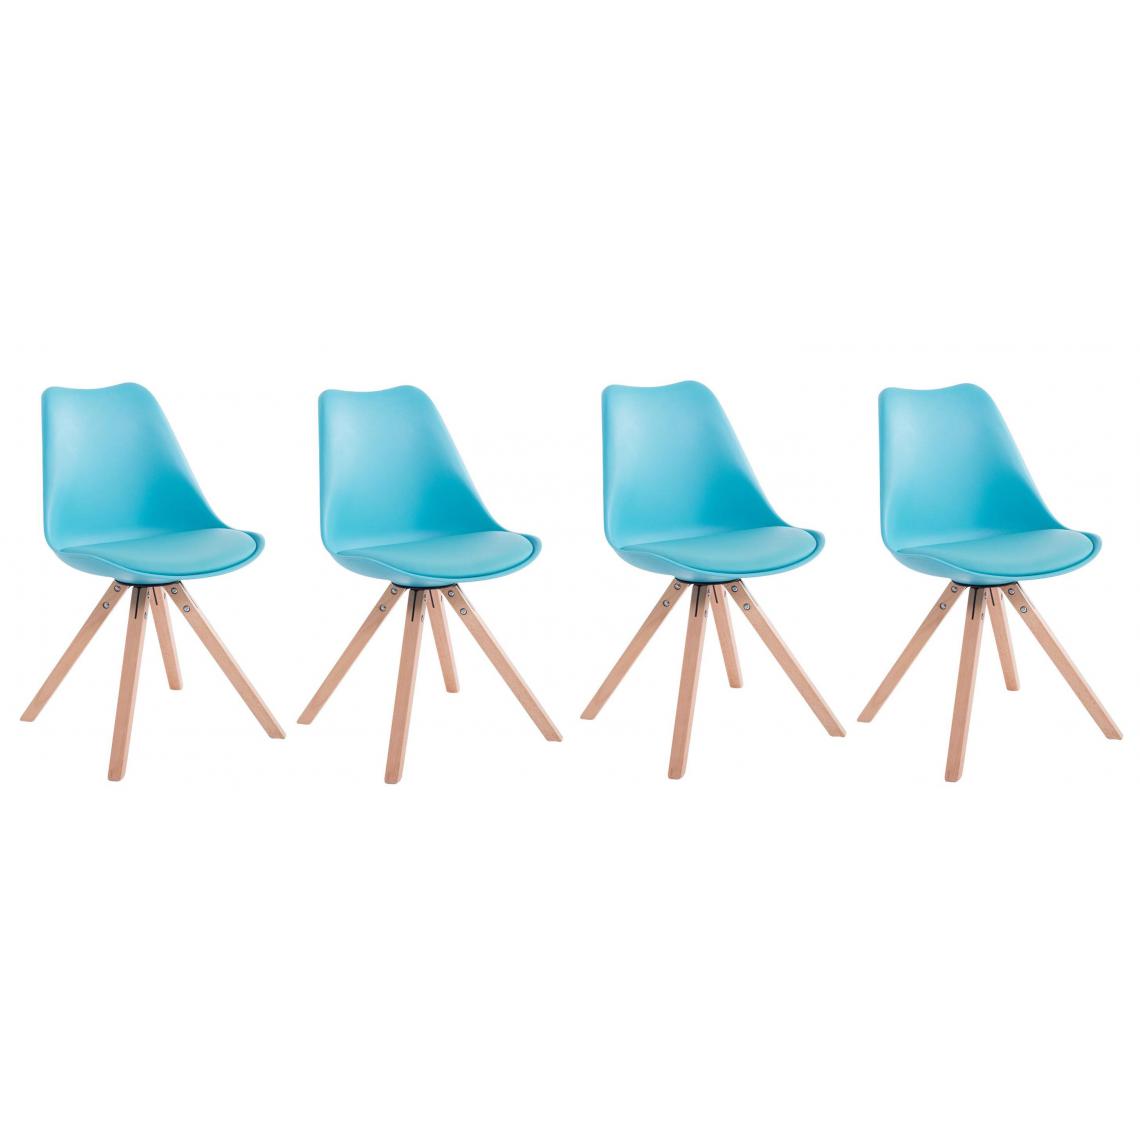 Decoshop26 - Lot de 4 chaises de salle à manger scandinave simili-cuir bleu pieds bois CDS10121 - Chaises